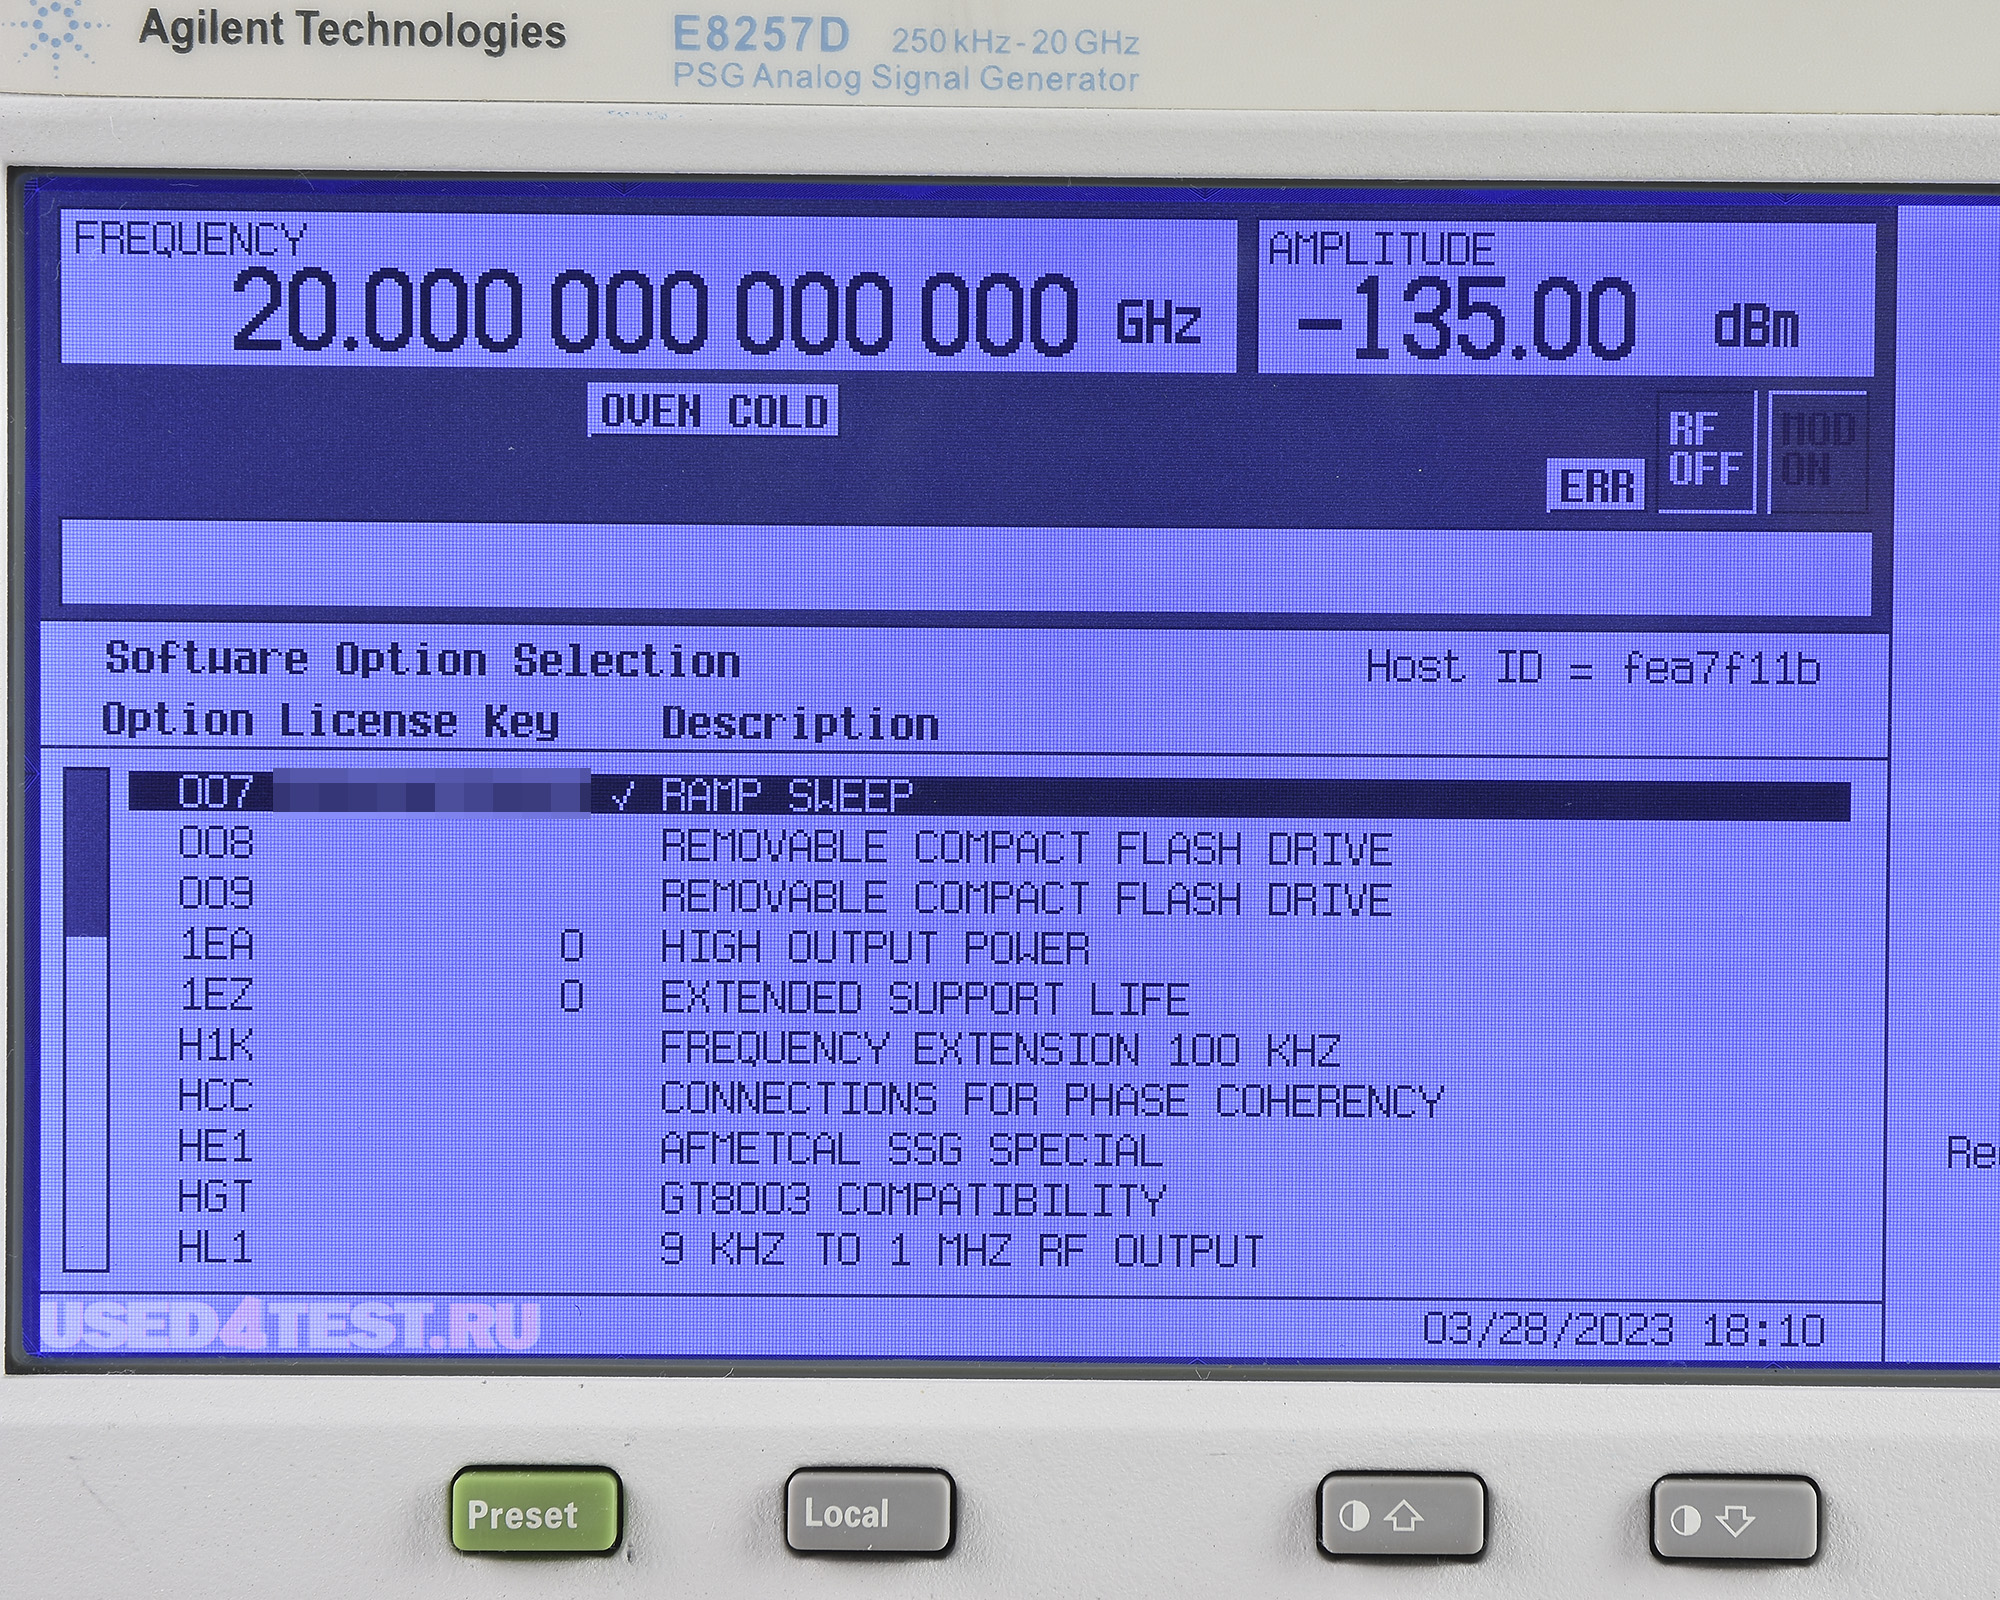 Генератор сигналов Agilent E8257D серия PSGс диапазоном от 100 кГц до 20 ГГц


 В комплекте с опциями: 

 

	007 — Плавное (аналоговое) свипирование
	1E1 — Выходной ступенчатый аттенюатор
	520 — Диапазон частот от 250 кГц до 20 ГГц
H1K — Расширение диапазона до 100 кГц
UNR — Улучшенные характеристики фазового шума
	UNT — Аналоговая модуляция: AM, ЧМ, ФМ и НЧ выход
	UNW — Модуляция короткими импульсами
